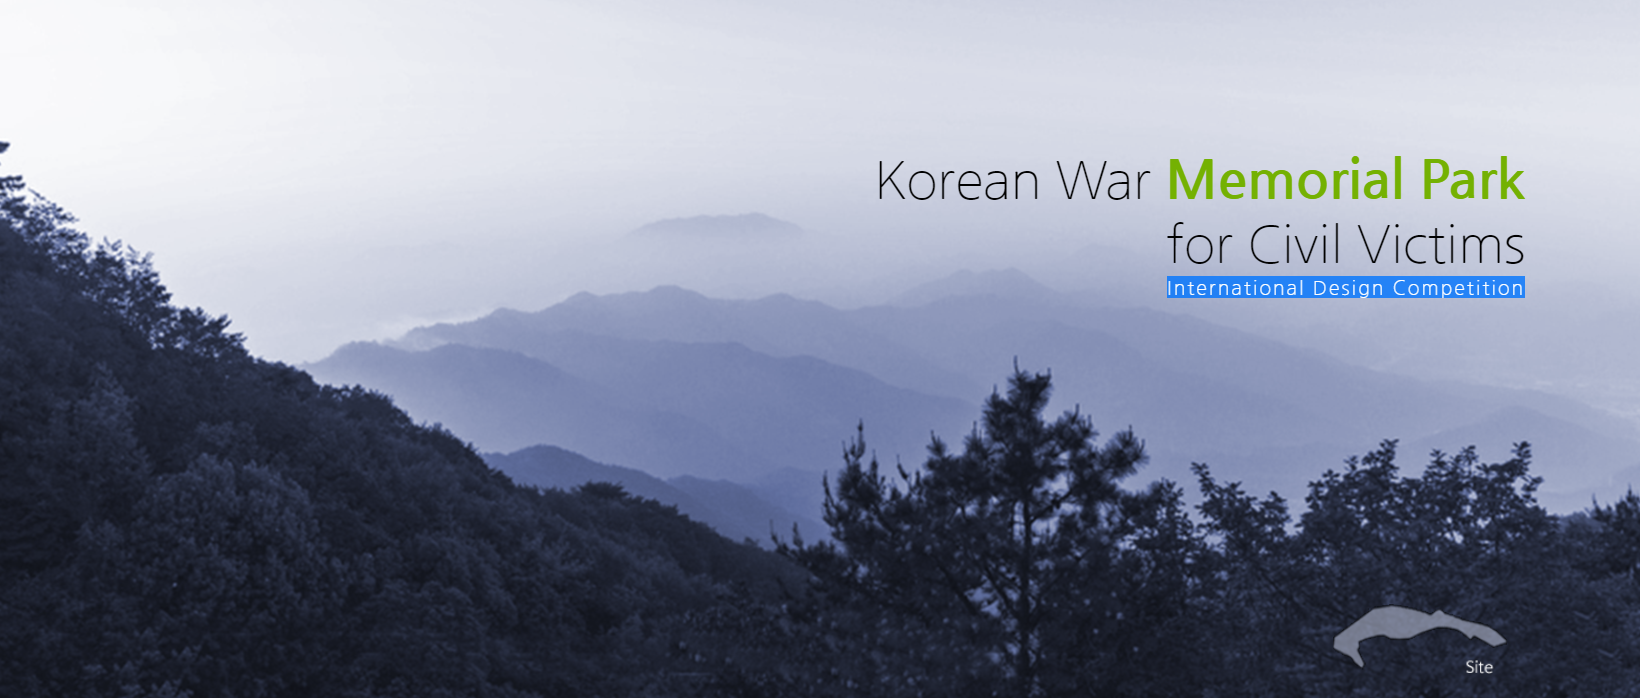 朝鲜战争死伤平民纪念公园国际设计竞赛